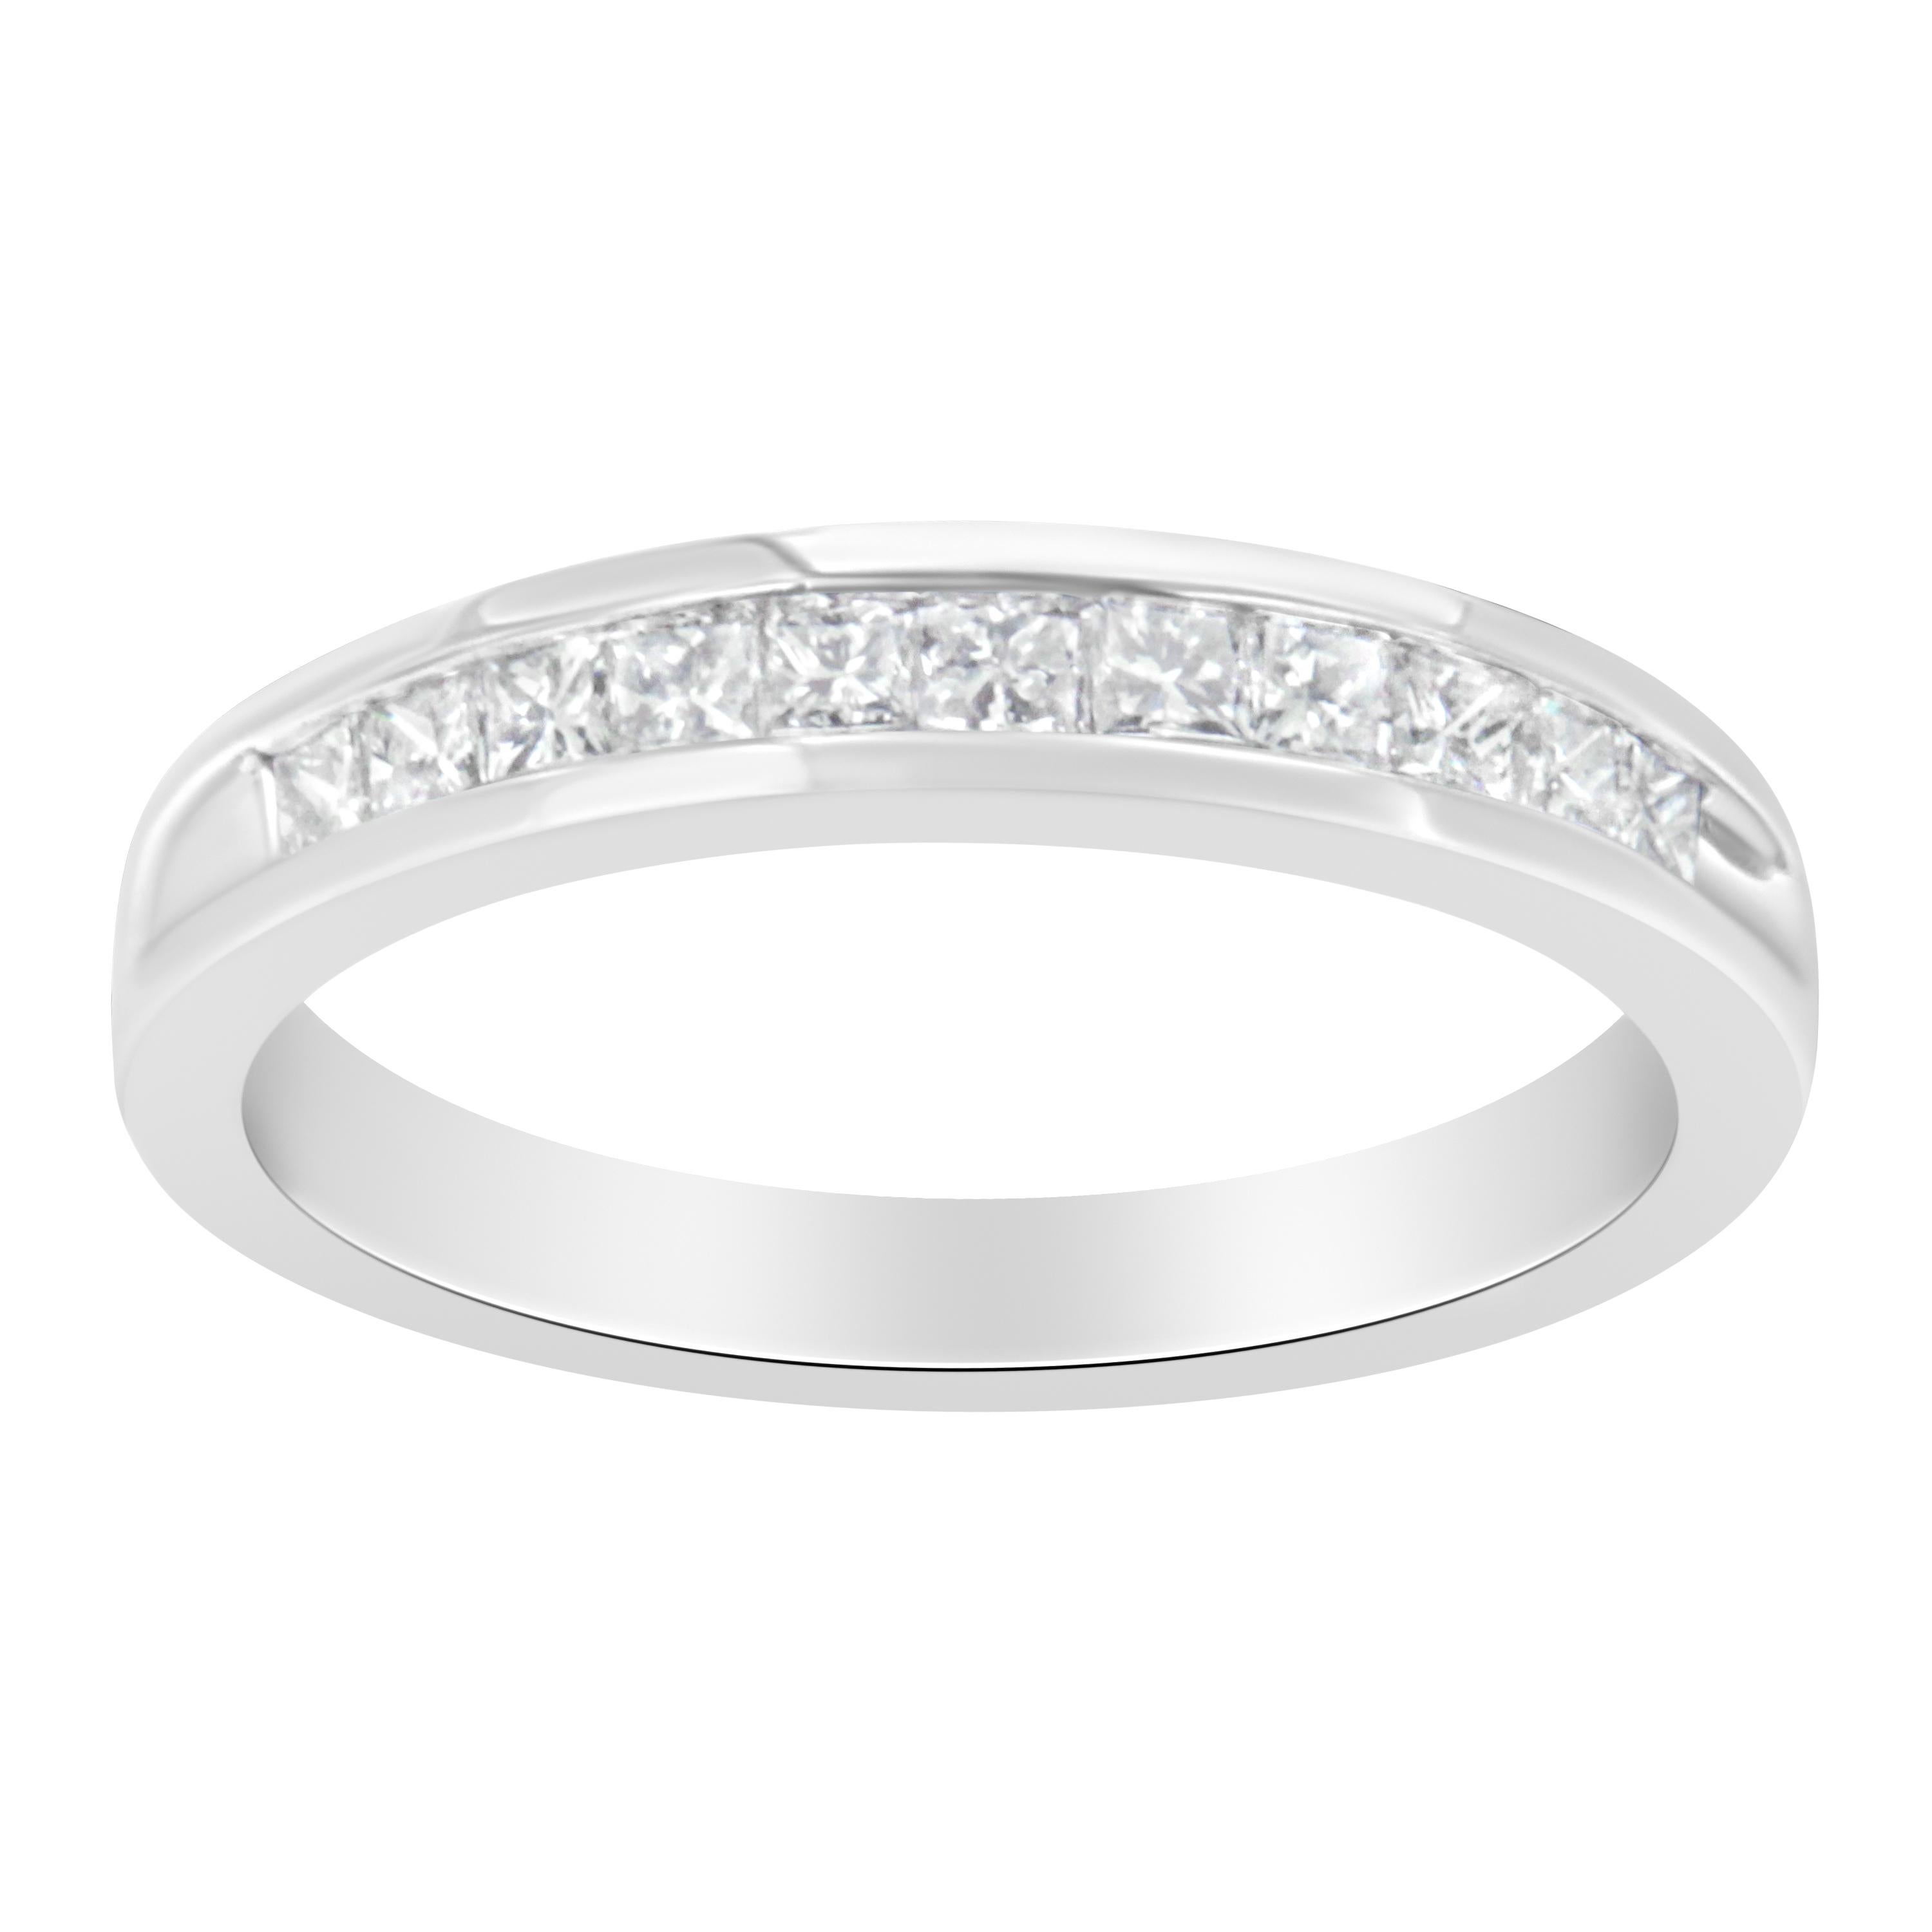 For Sale:  IGI Certified 18k White Gold 1/2 Carat Diamond Wedding Band Ring 2